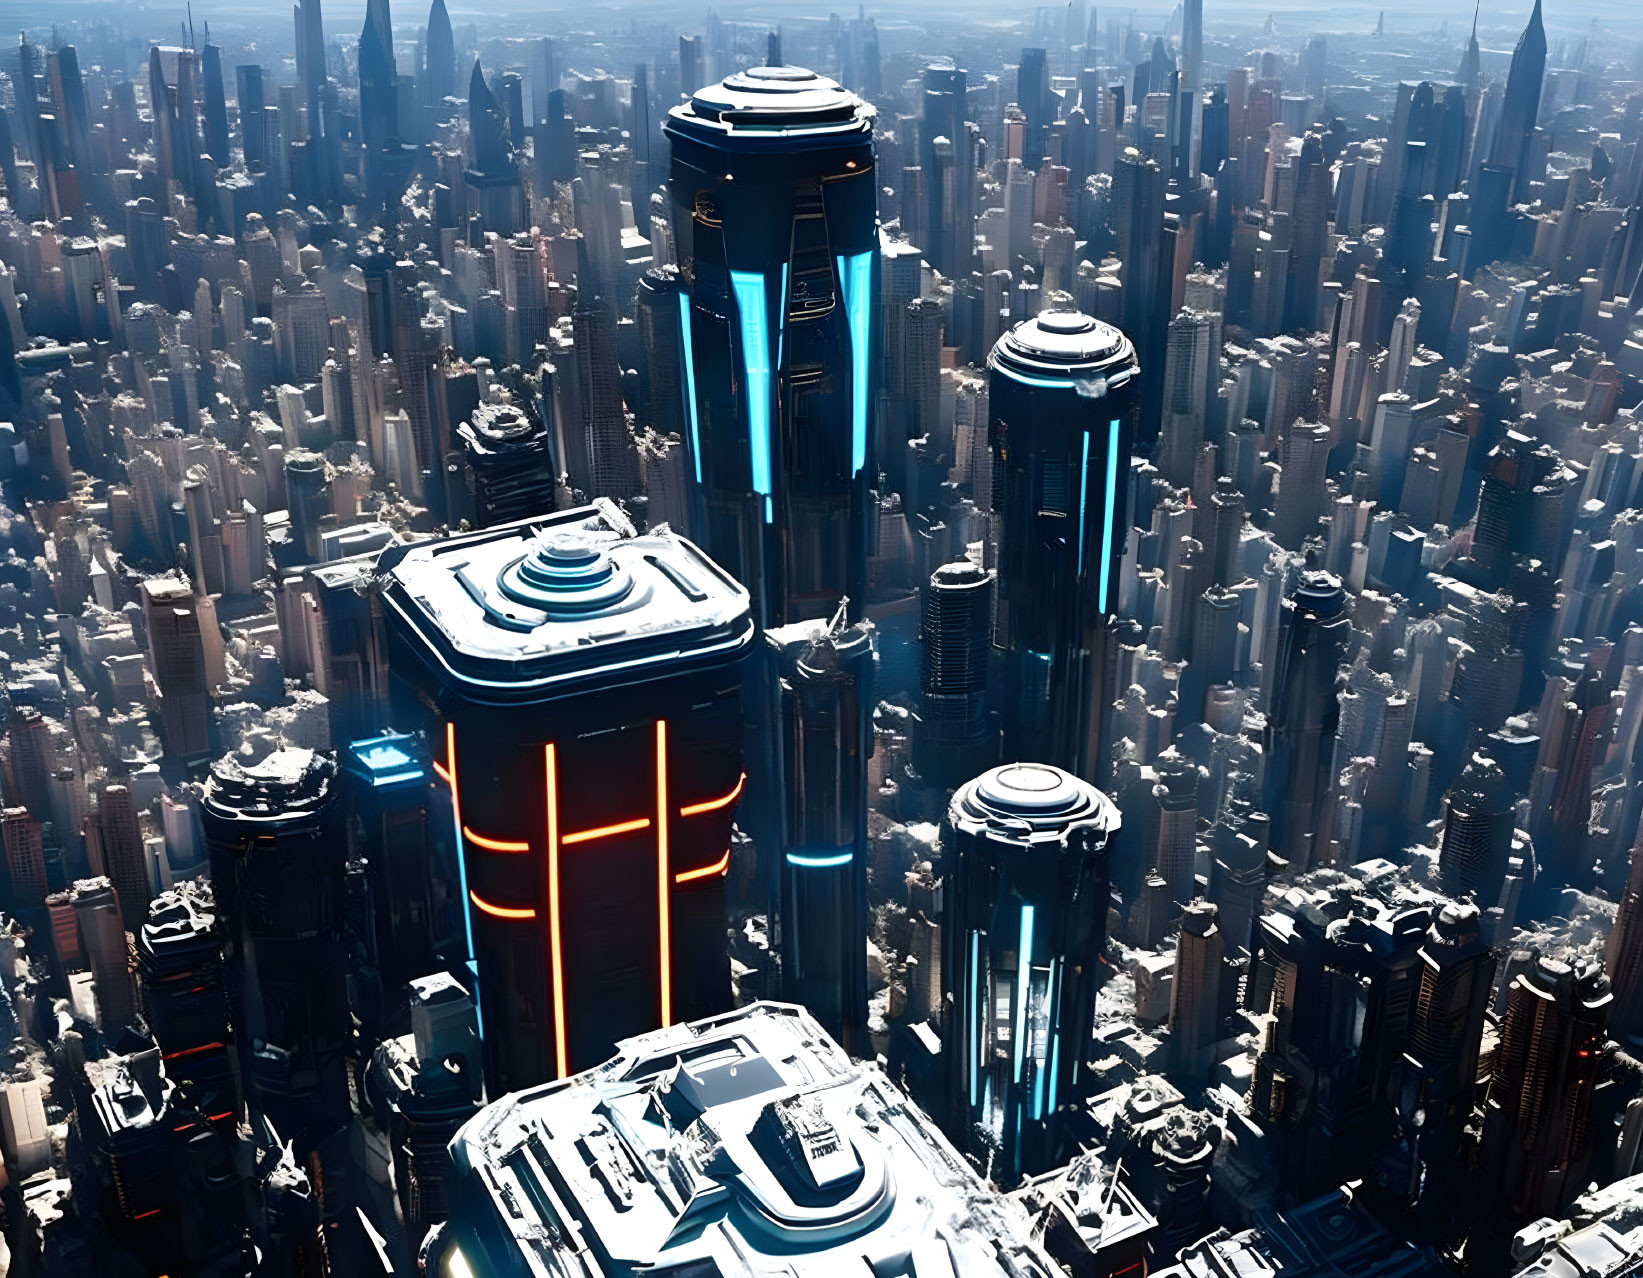 Futuristic city